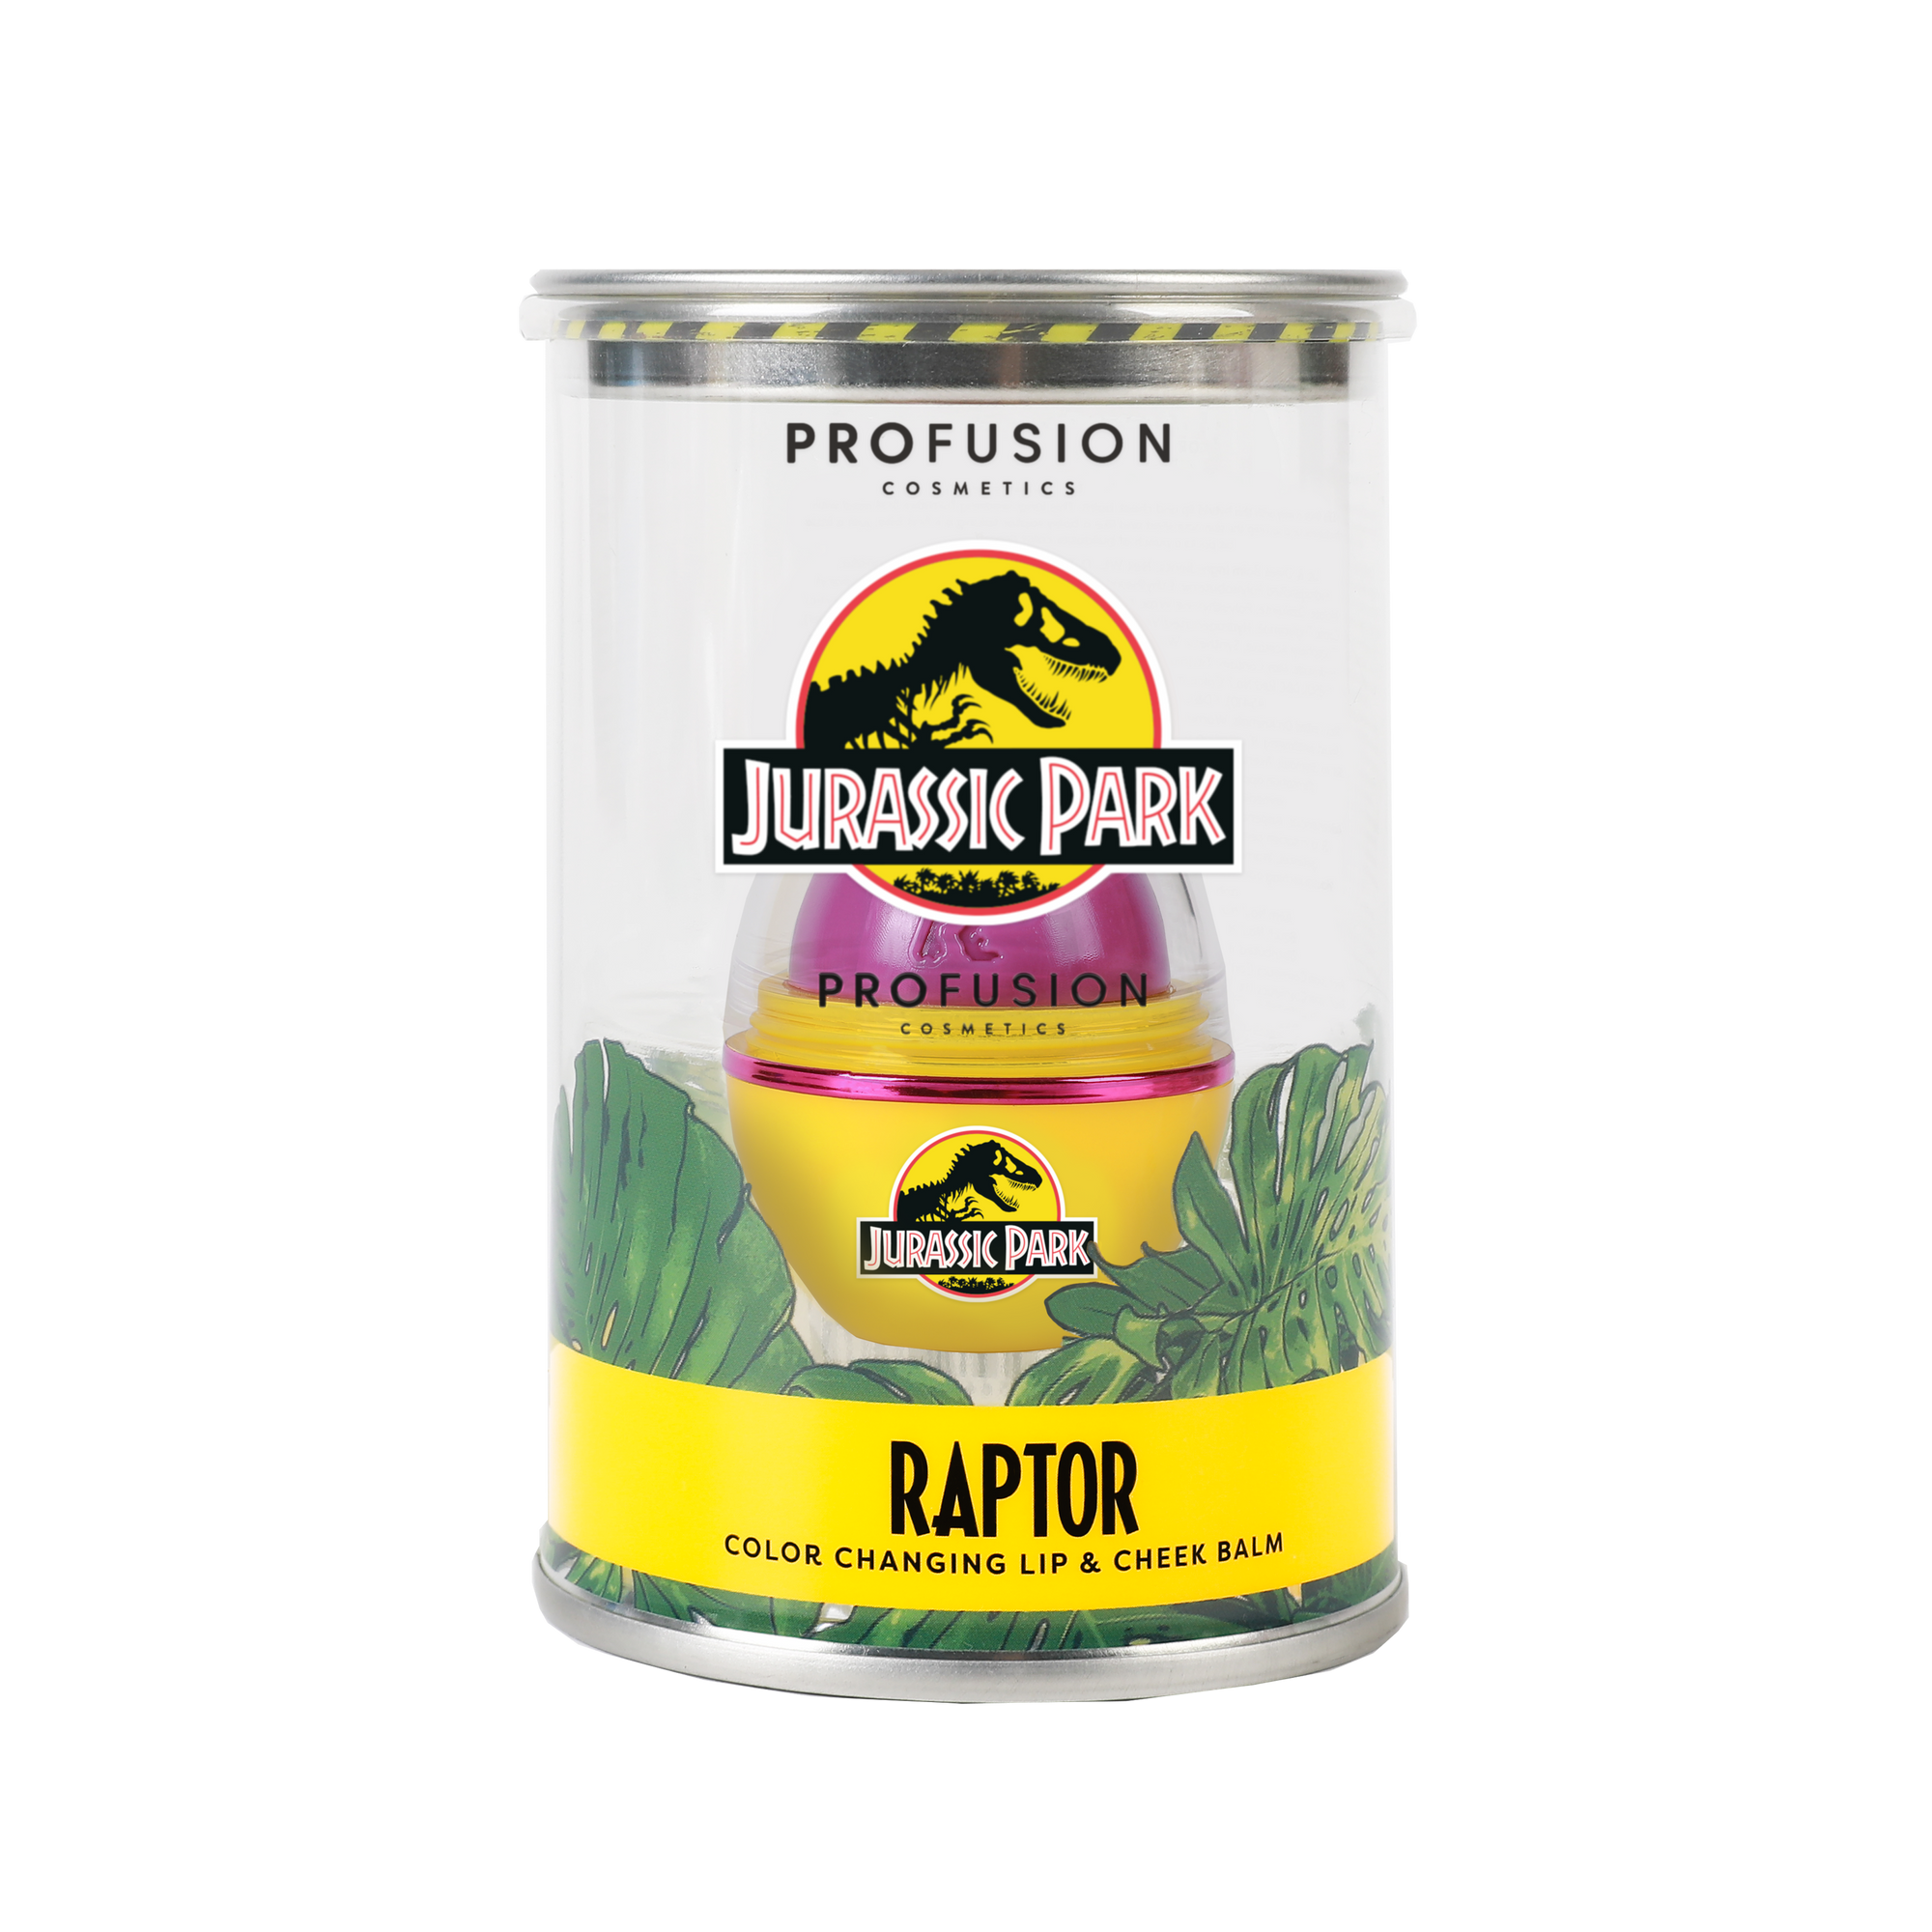 Raptor in clear tube packaging 